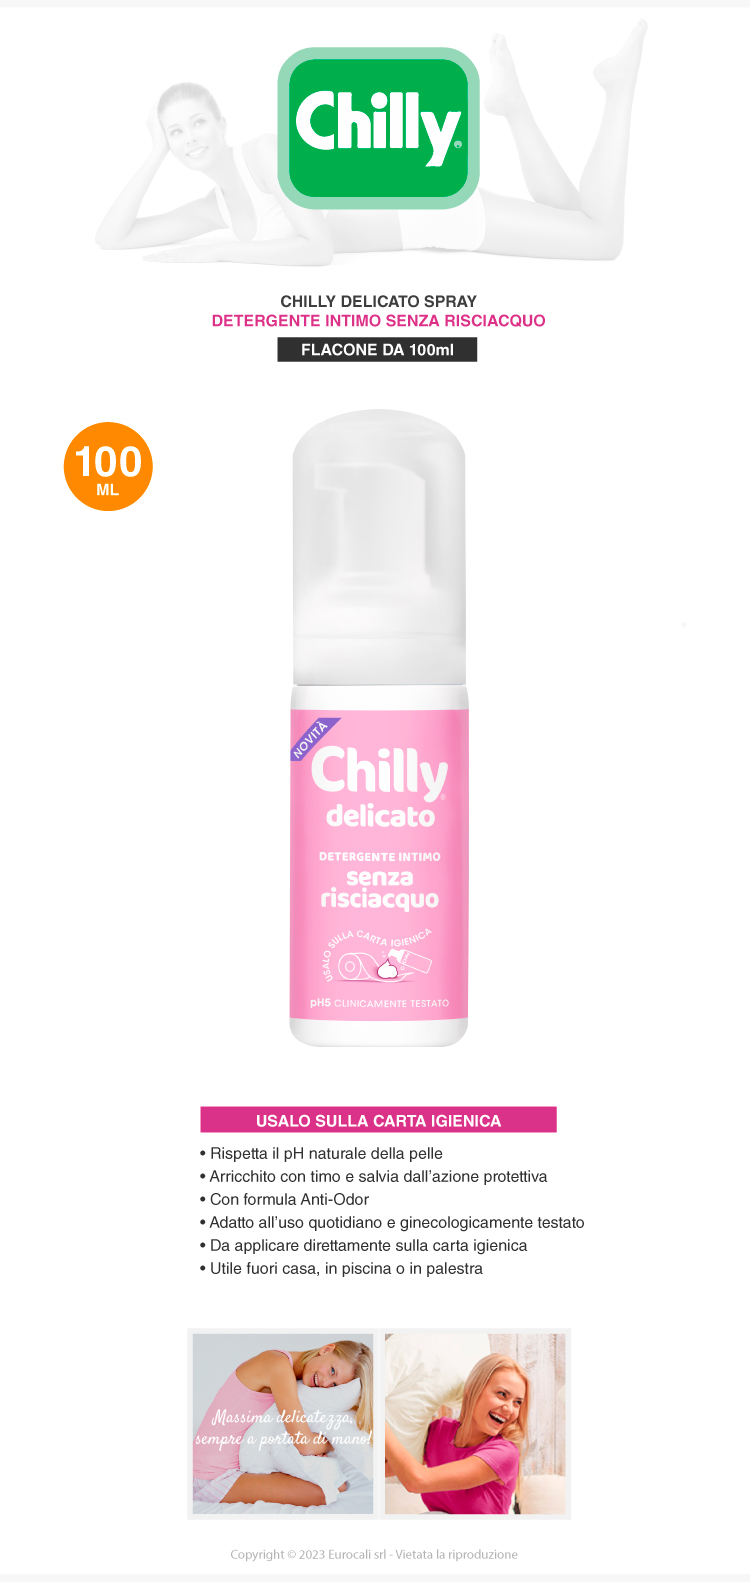 Chilly Delicato Detergente Intimo Senza Risciacquo pH 5 Anti-Odor 100ml